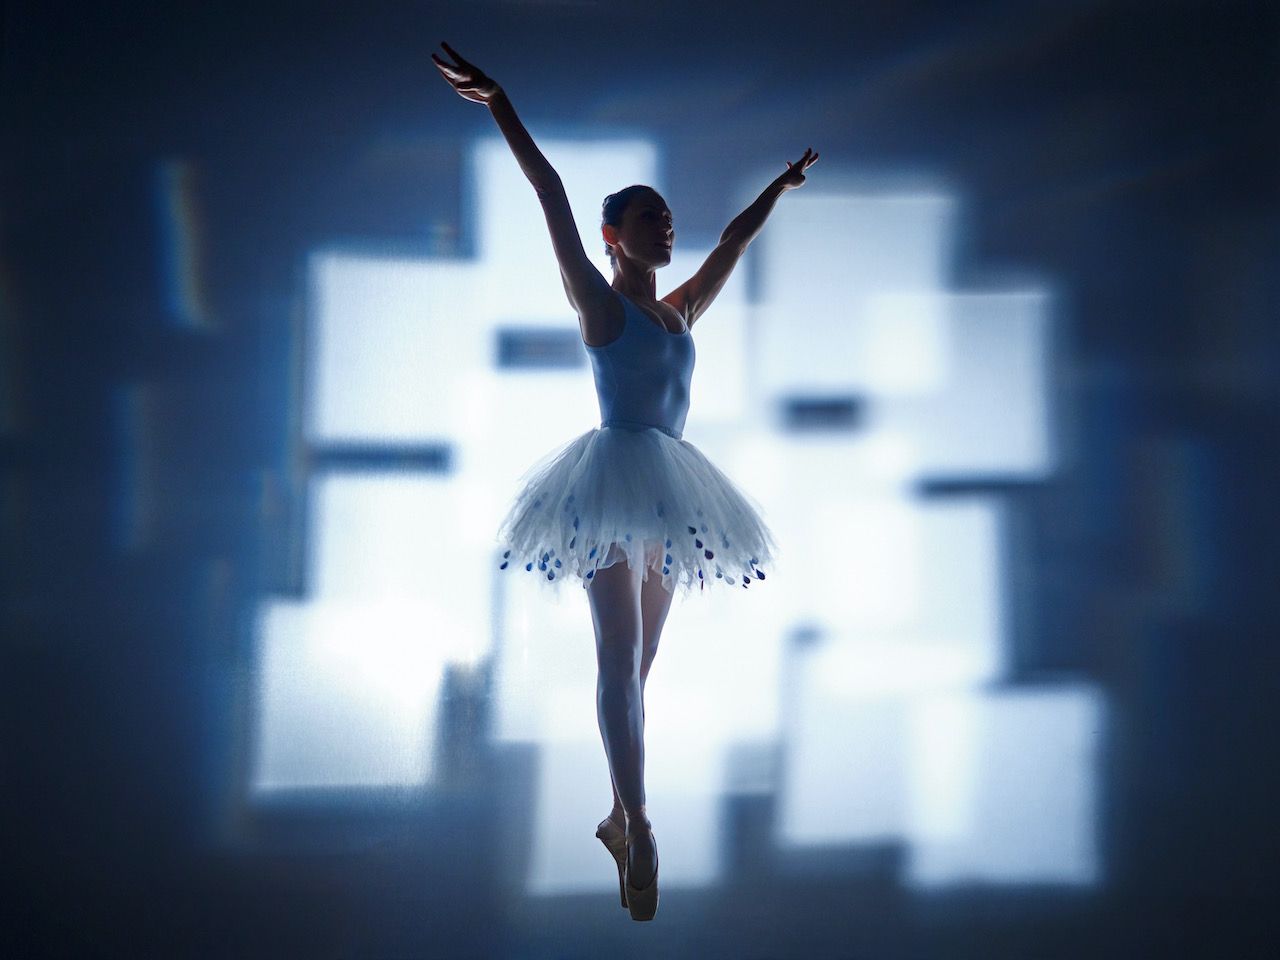 Michael Haegele photographie abstraite silhouette de ballerine en tutu avec des carrés lumineux qui se chevauchent en arrière-plan